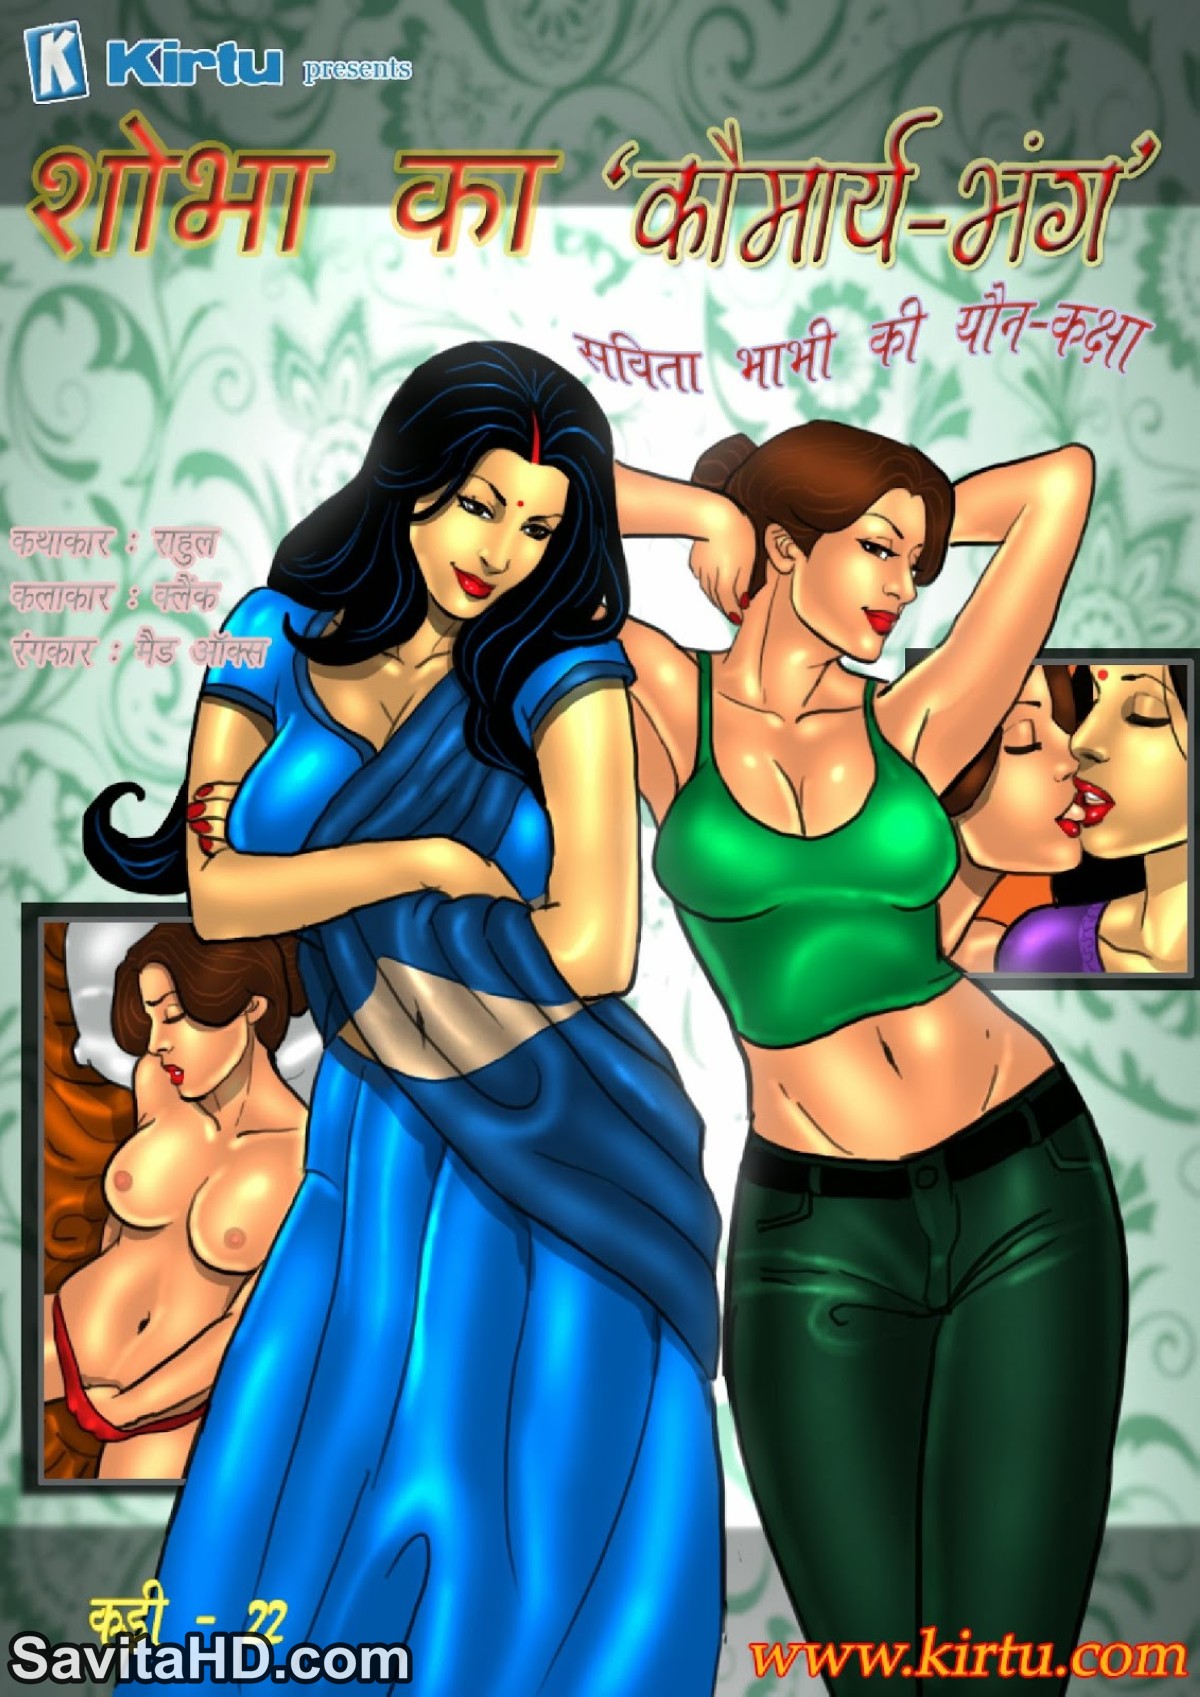 Hindi xxx all latest comics